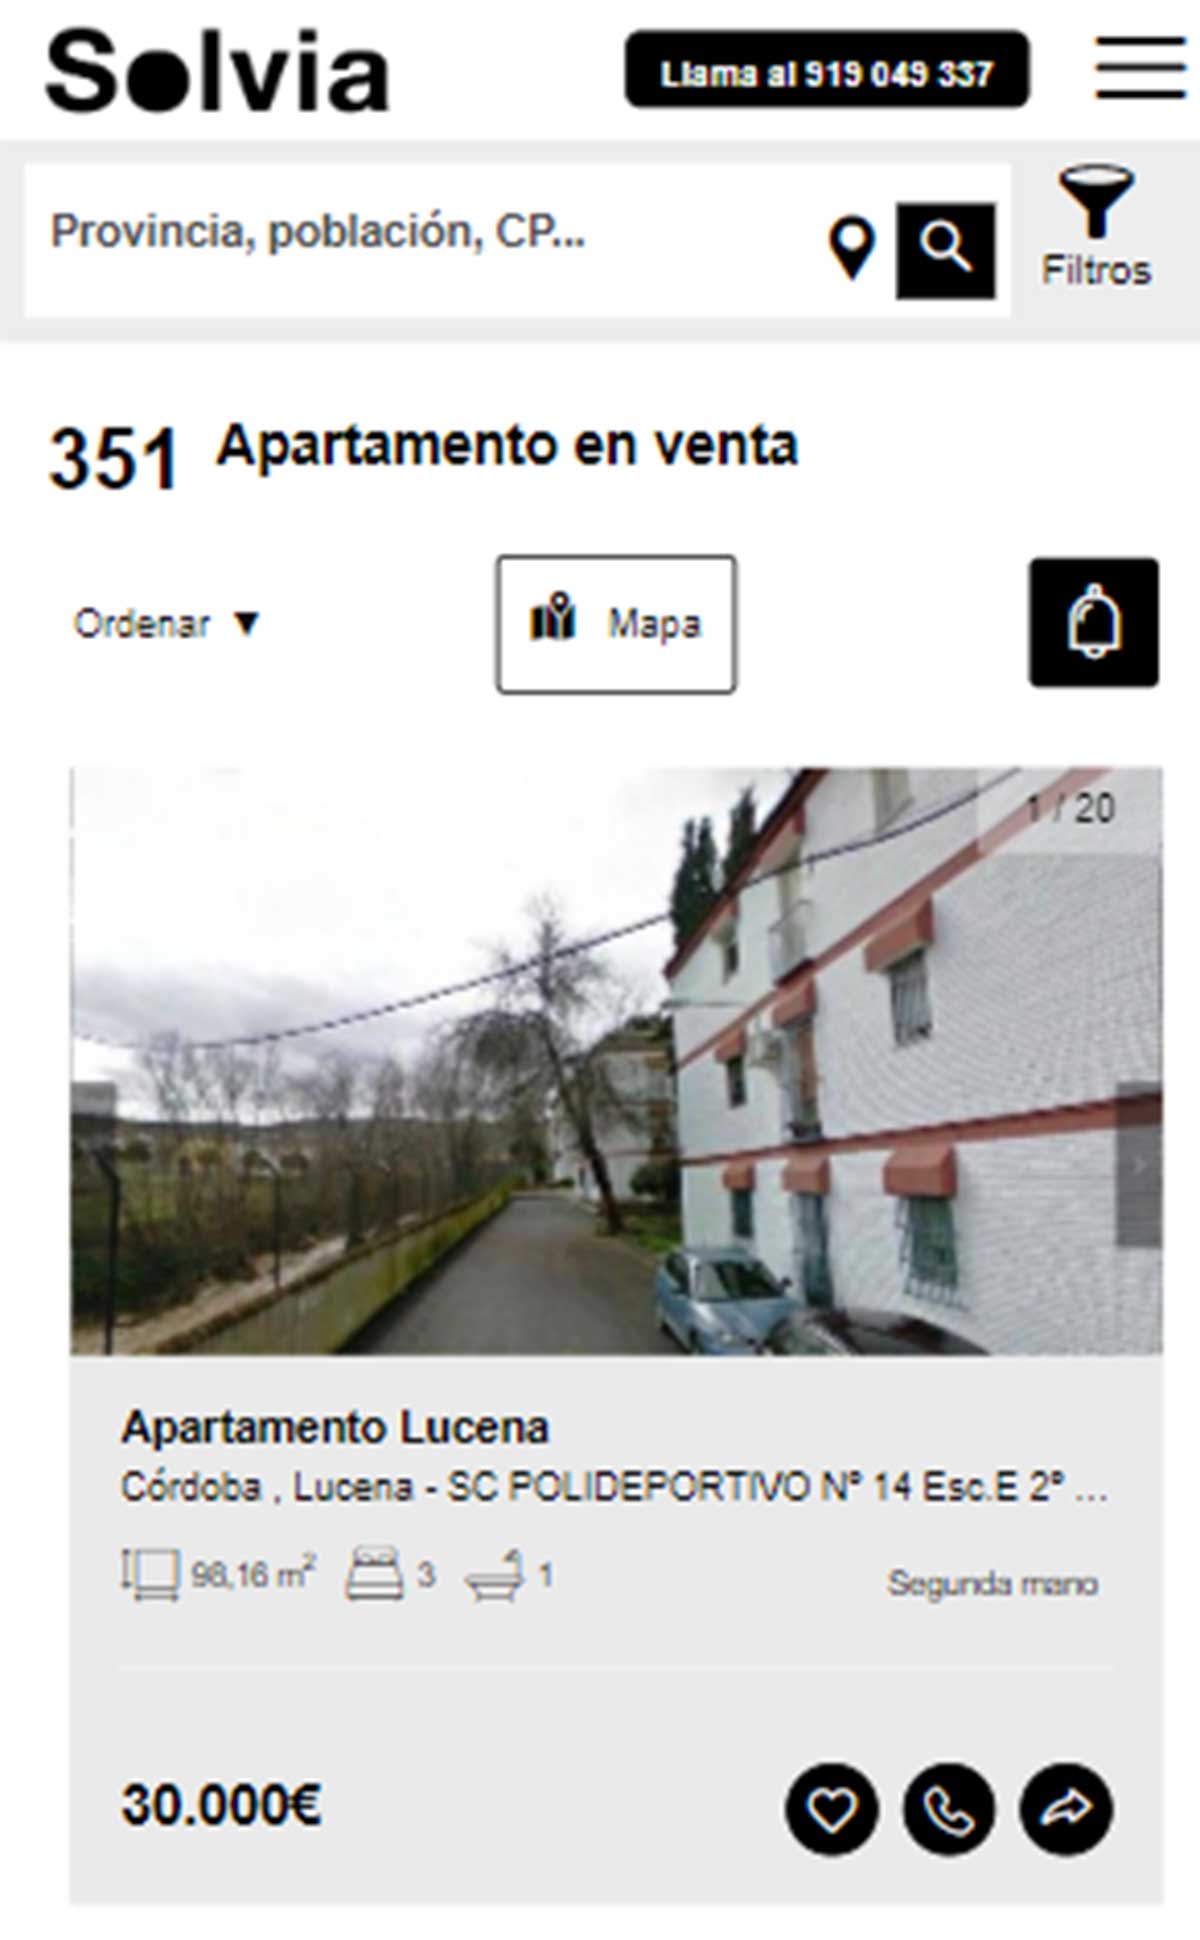 Apartamento a la venta por 30.000 euros